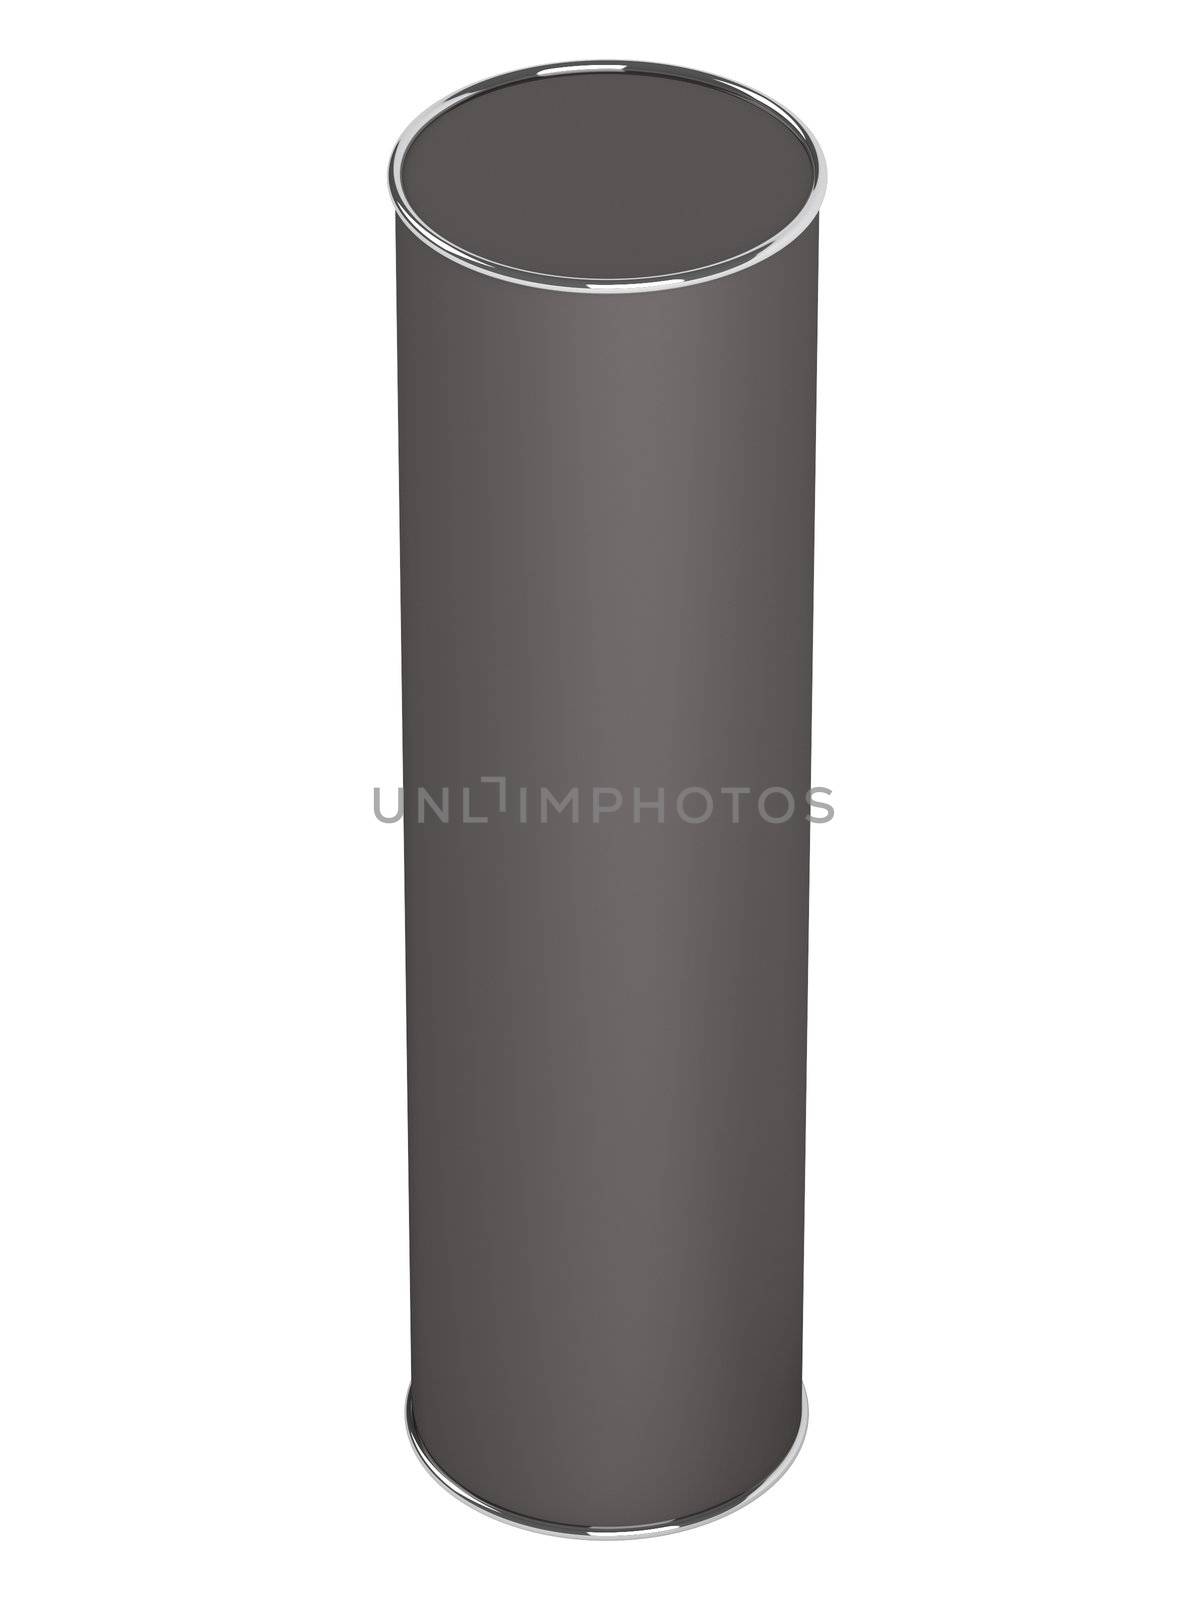 Black tube bottle shanpoo isolated on white background